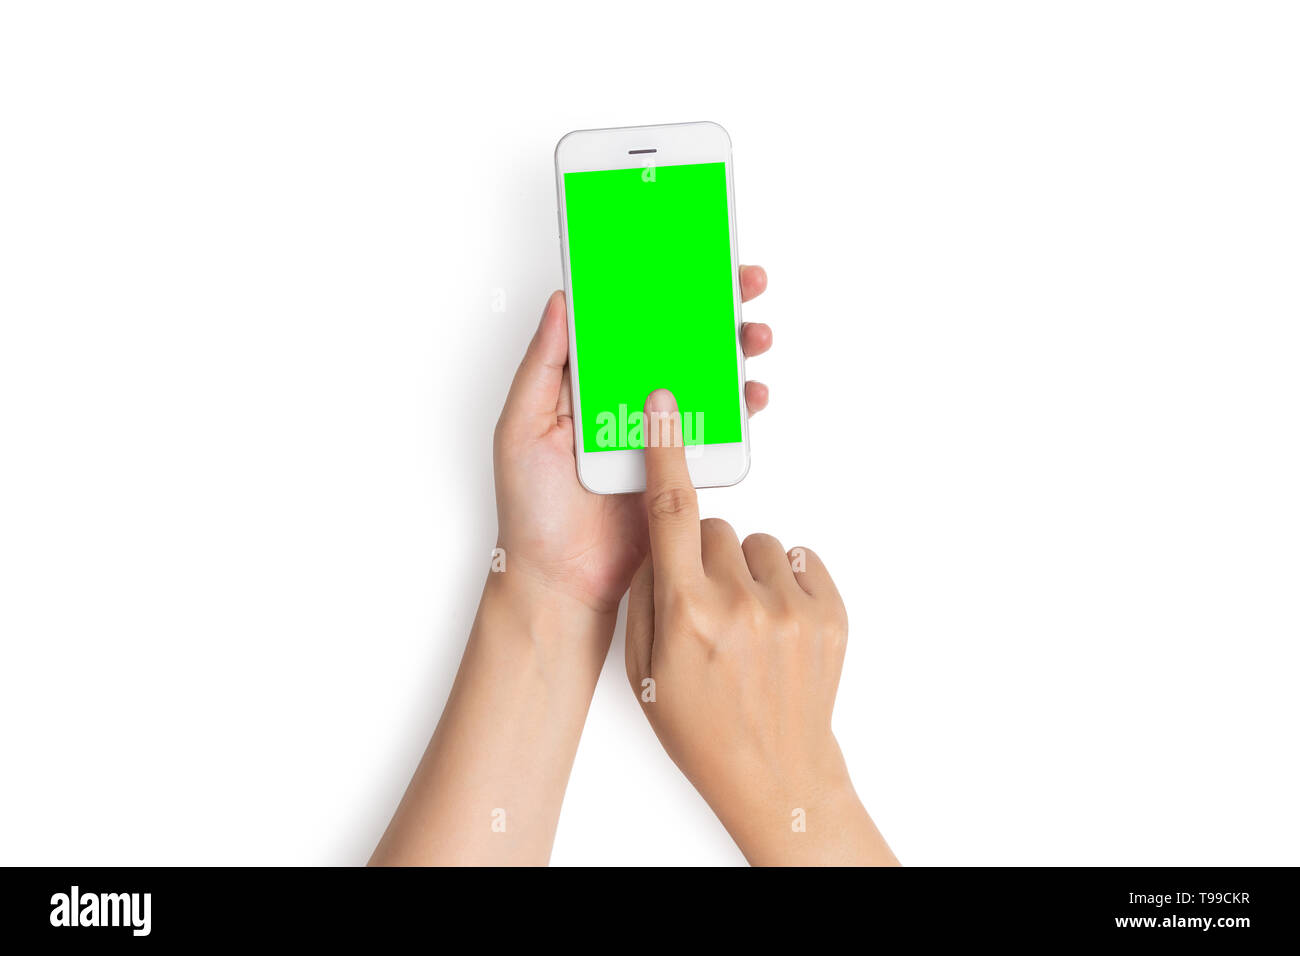 Femme part utiliser le doigt sur le bouton de téléphone mobile tactile avec écran vert blanc en vue de dessus, isolé sur fond blanc avec clipping path Banque D'Images